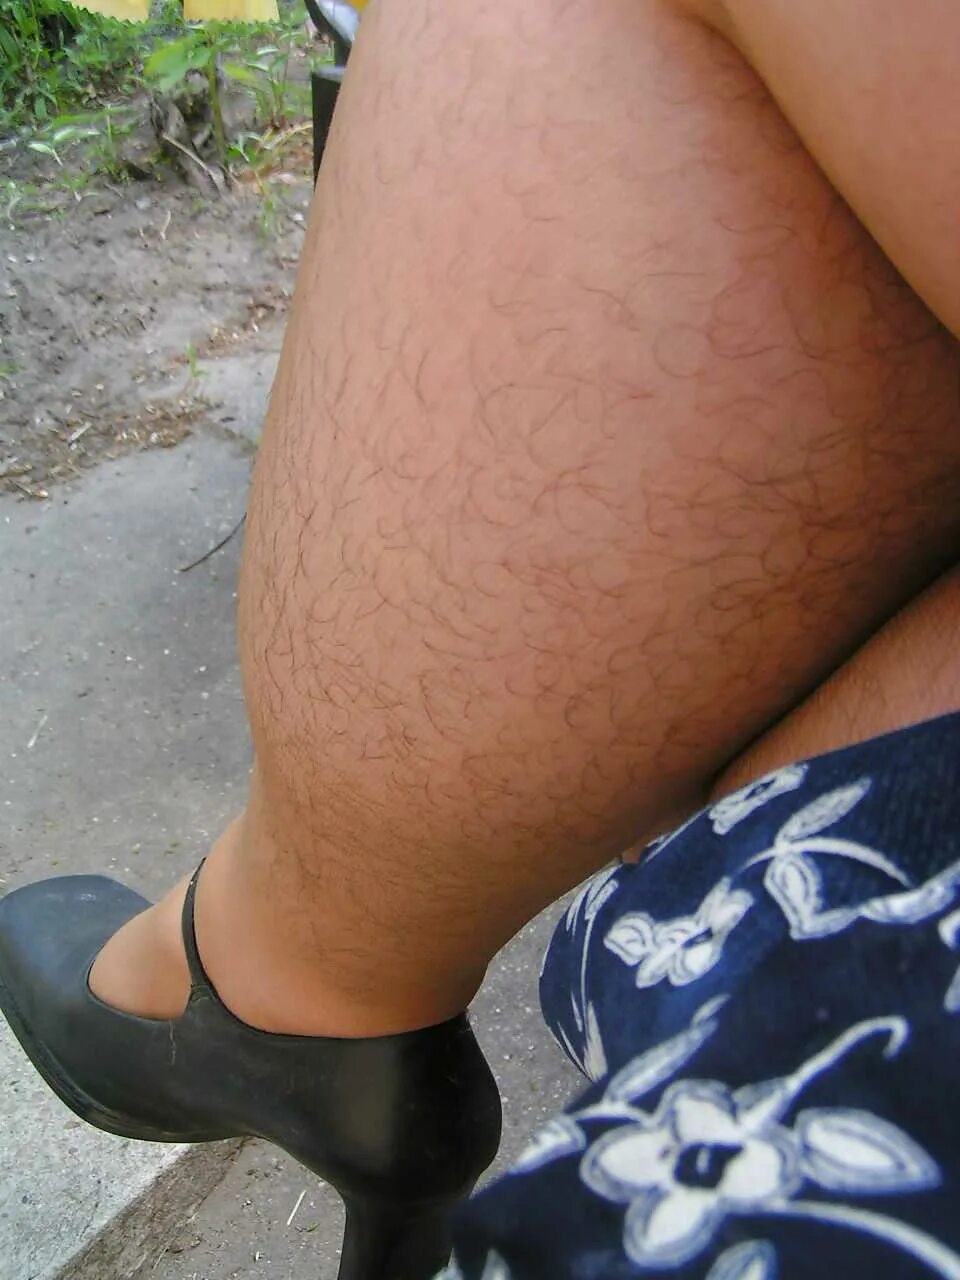 Женские воло атые ноги. Не бриьые женские ноги. Очень волосатые женские ноги. Very hairy legs